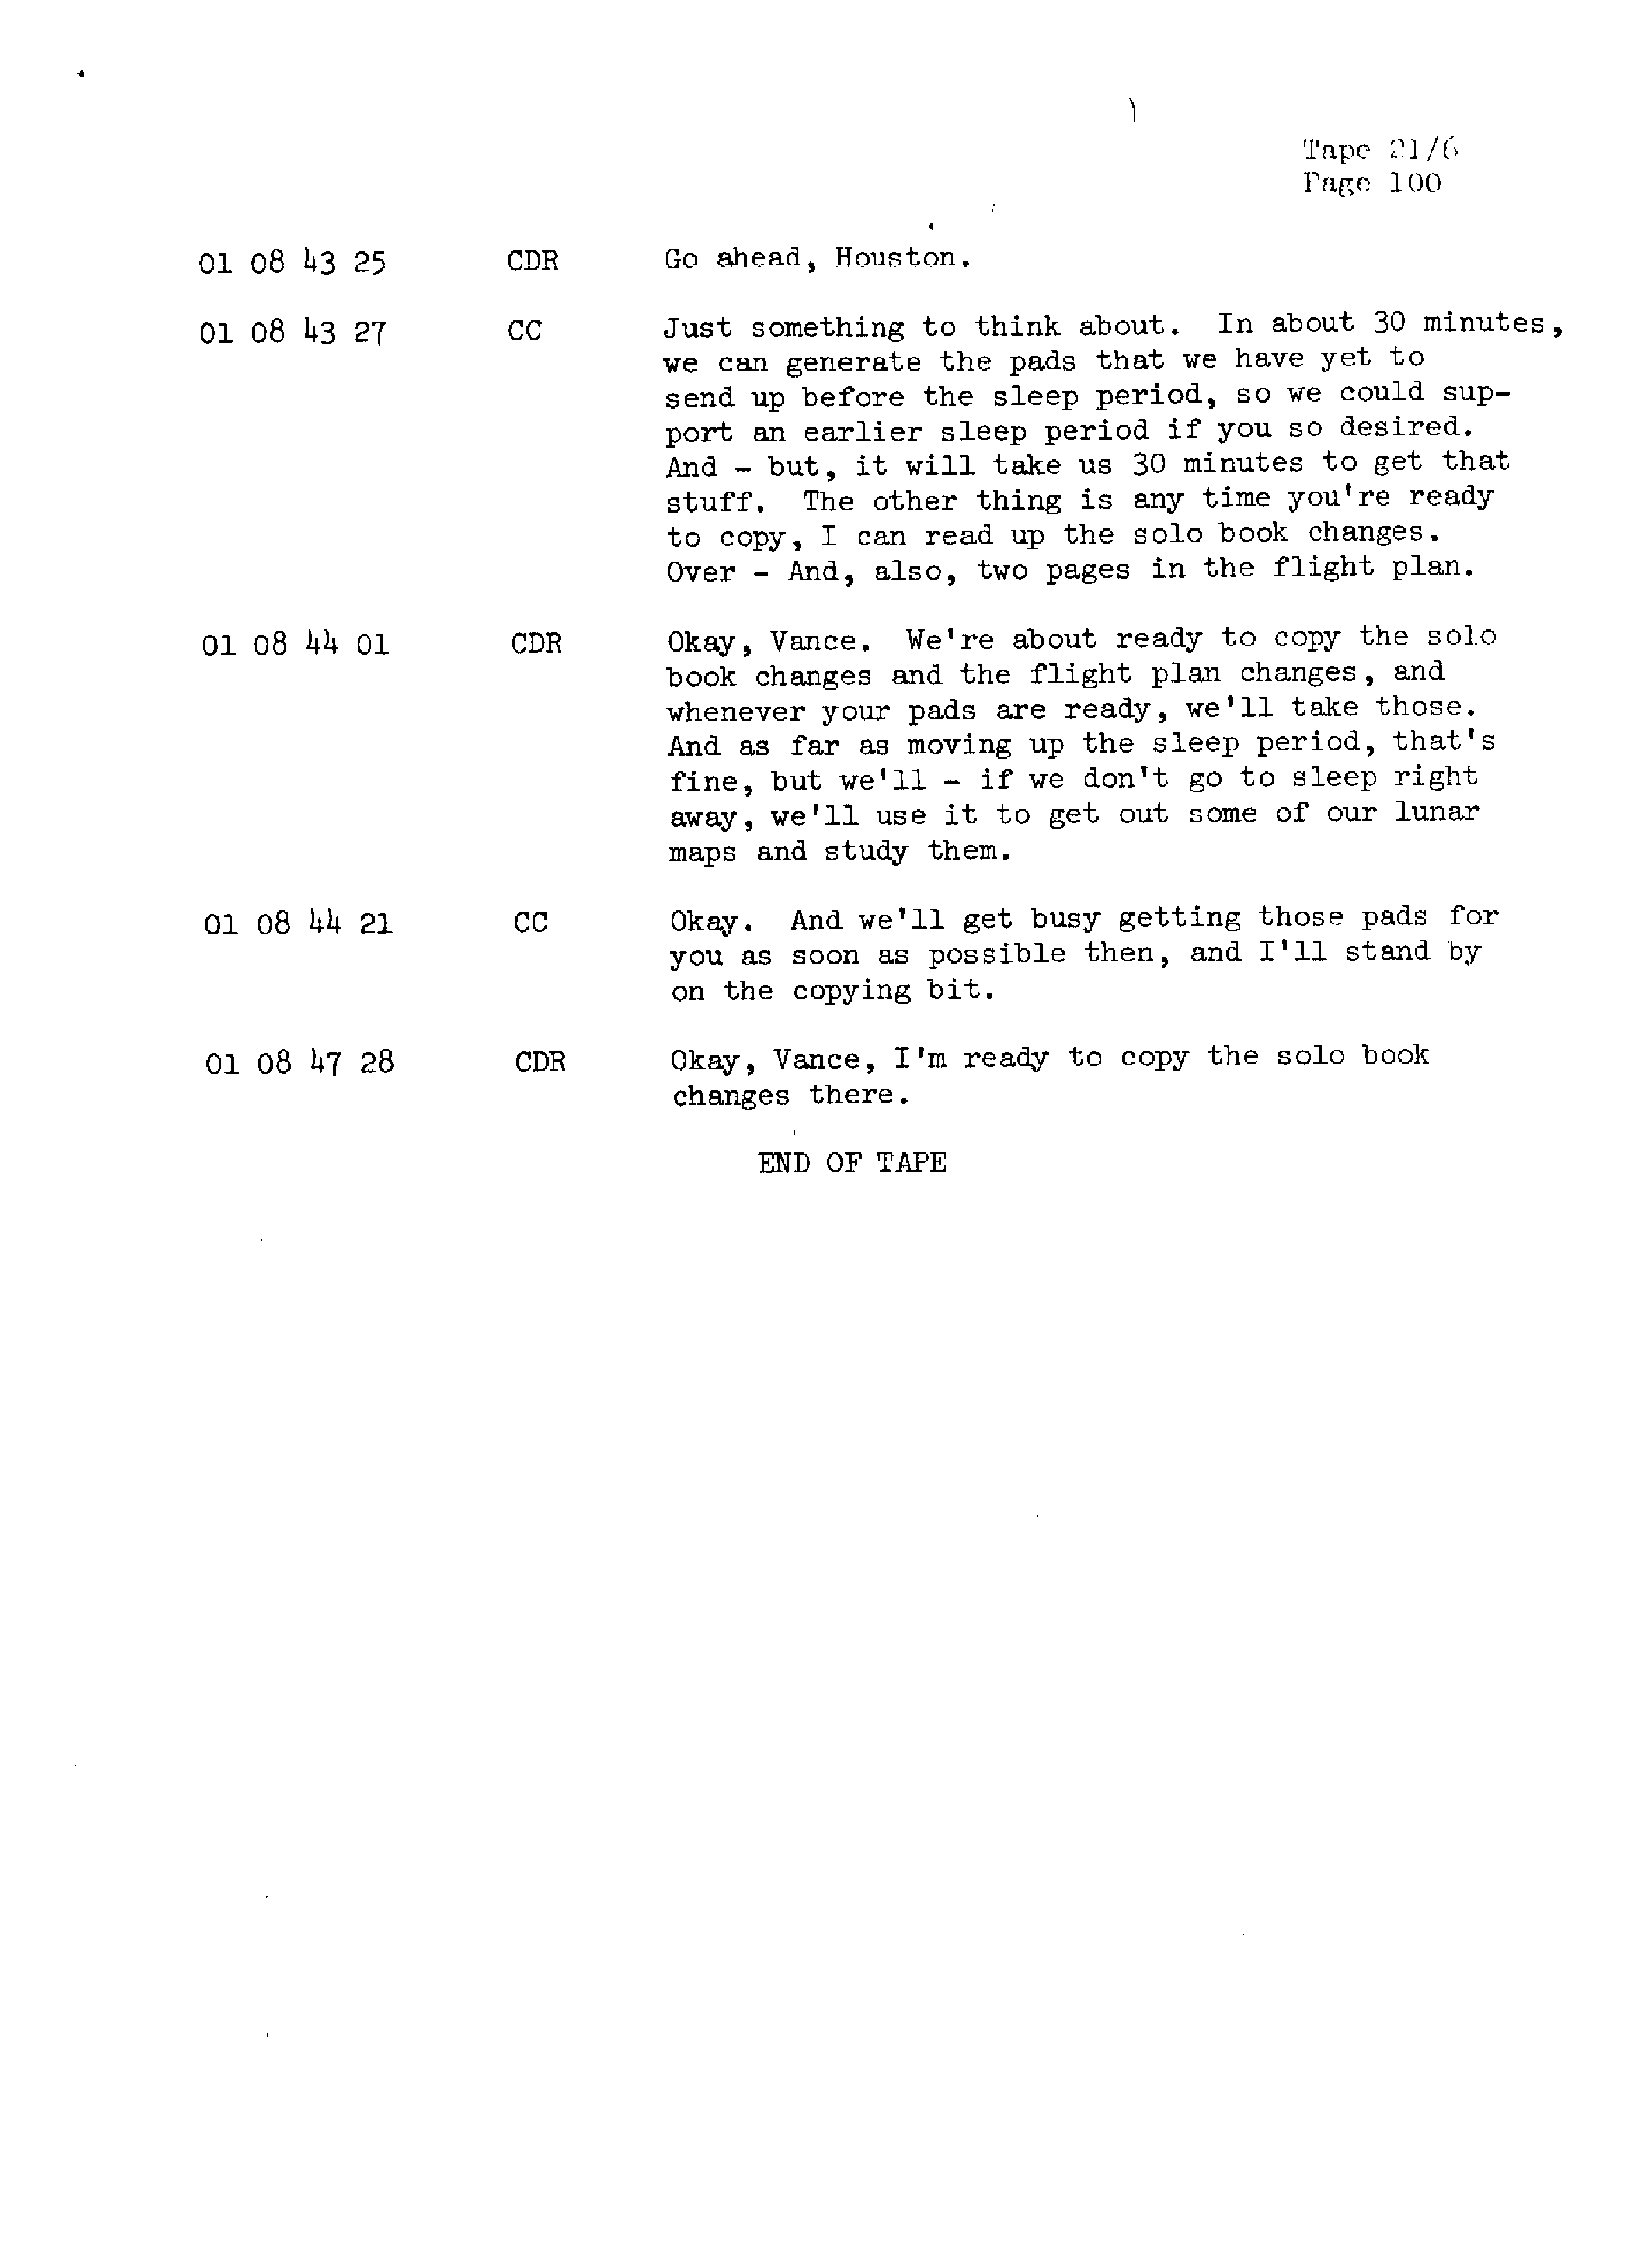 Page 107 of Apollo 13’s original transcript